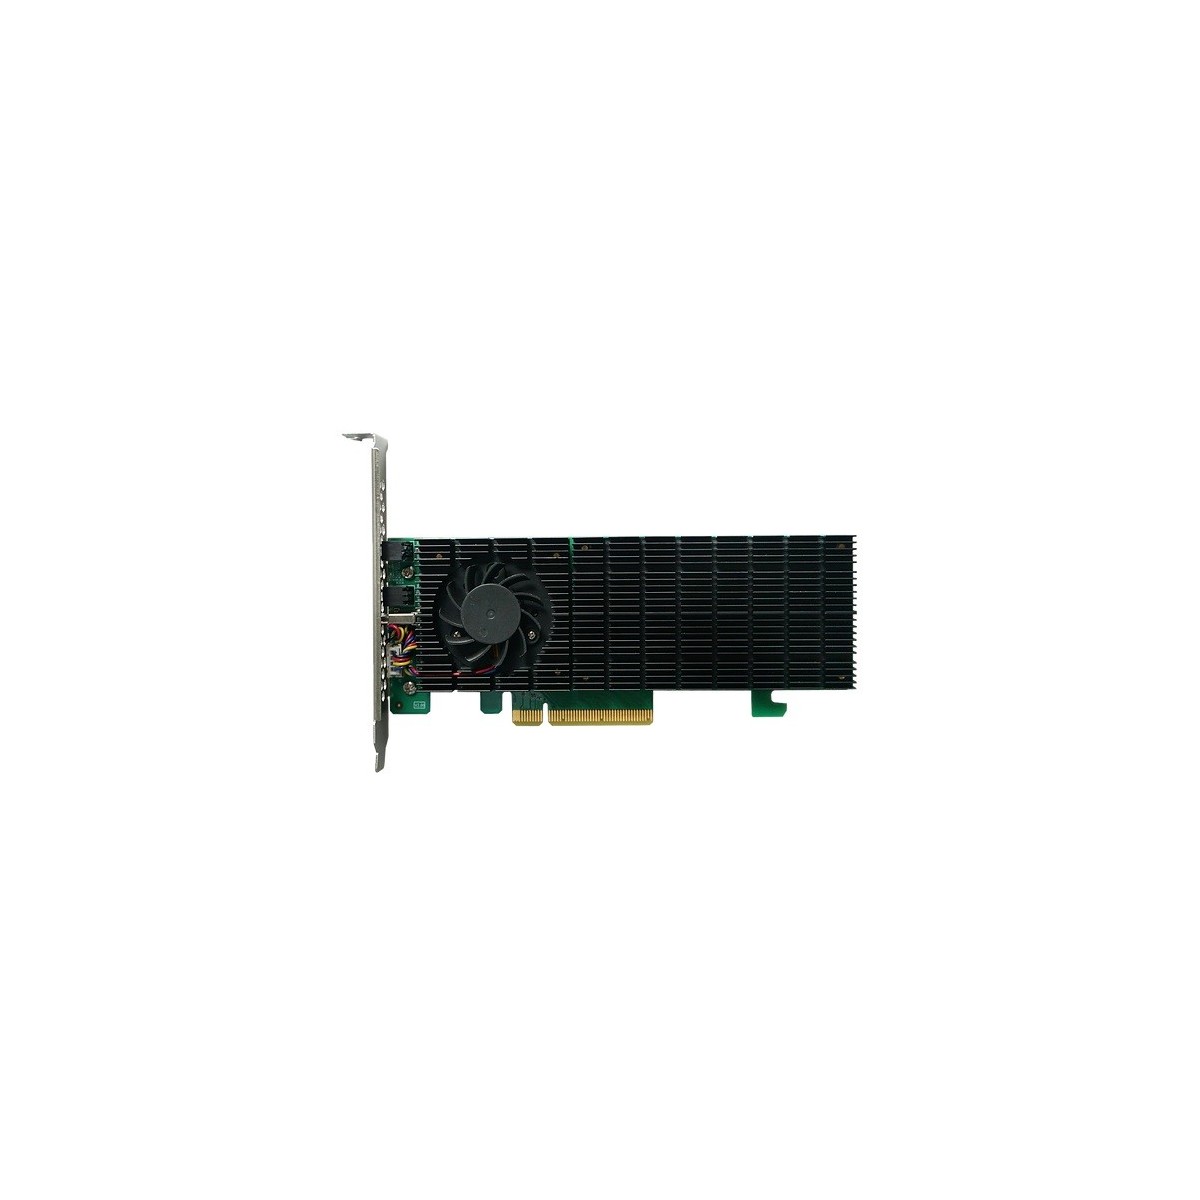 HighPoint HighP SSD6202A 2x M.2 PCIe Gen3 x8 NVMe - NVMe